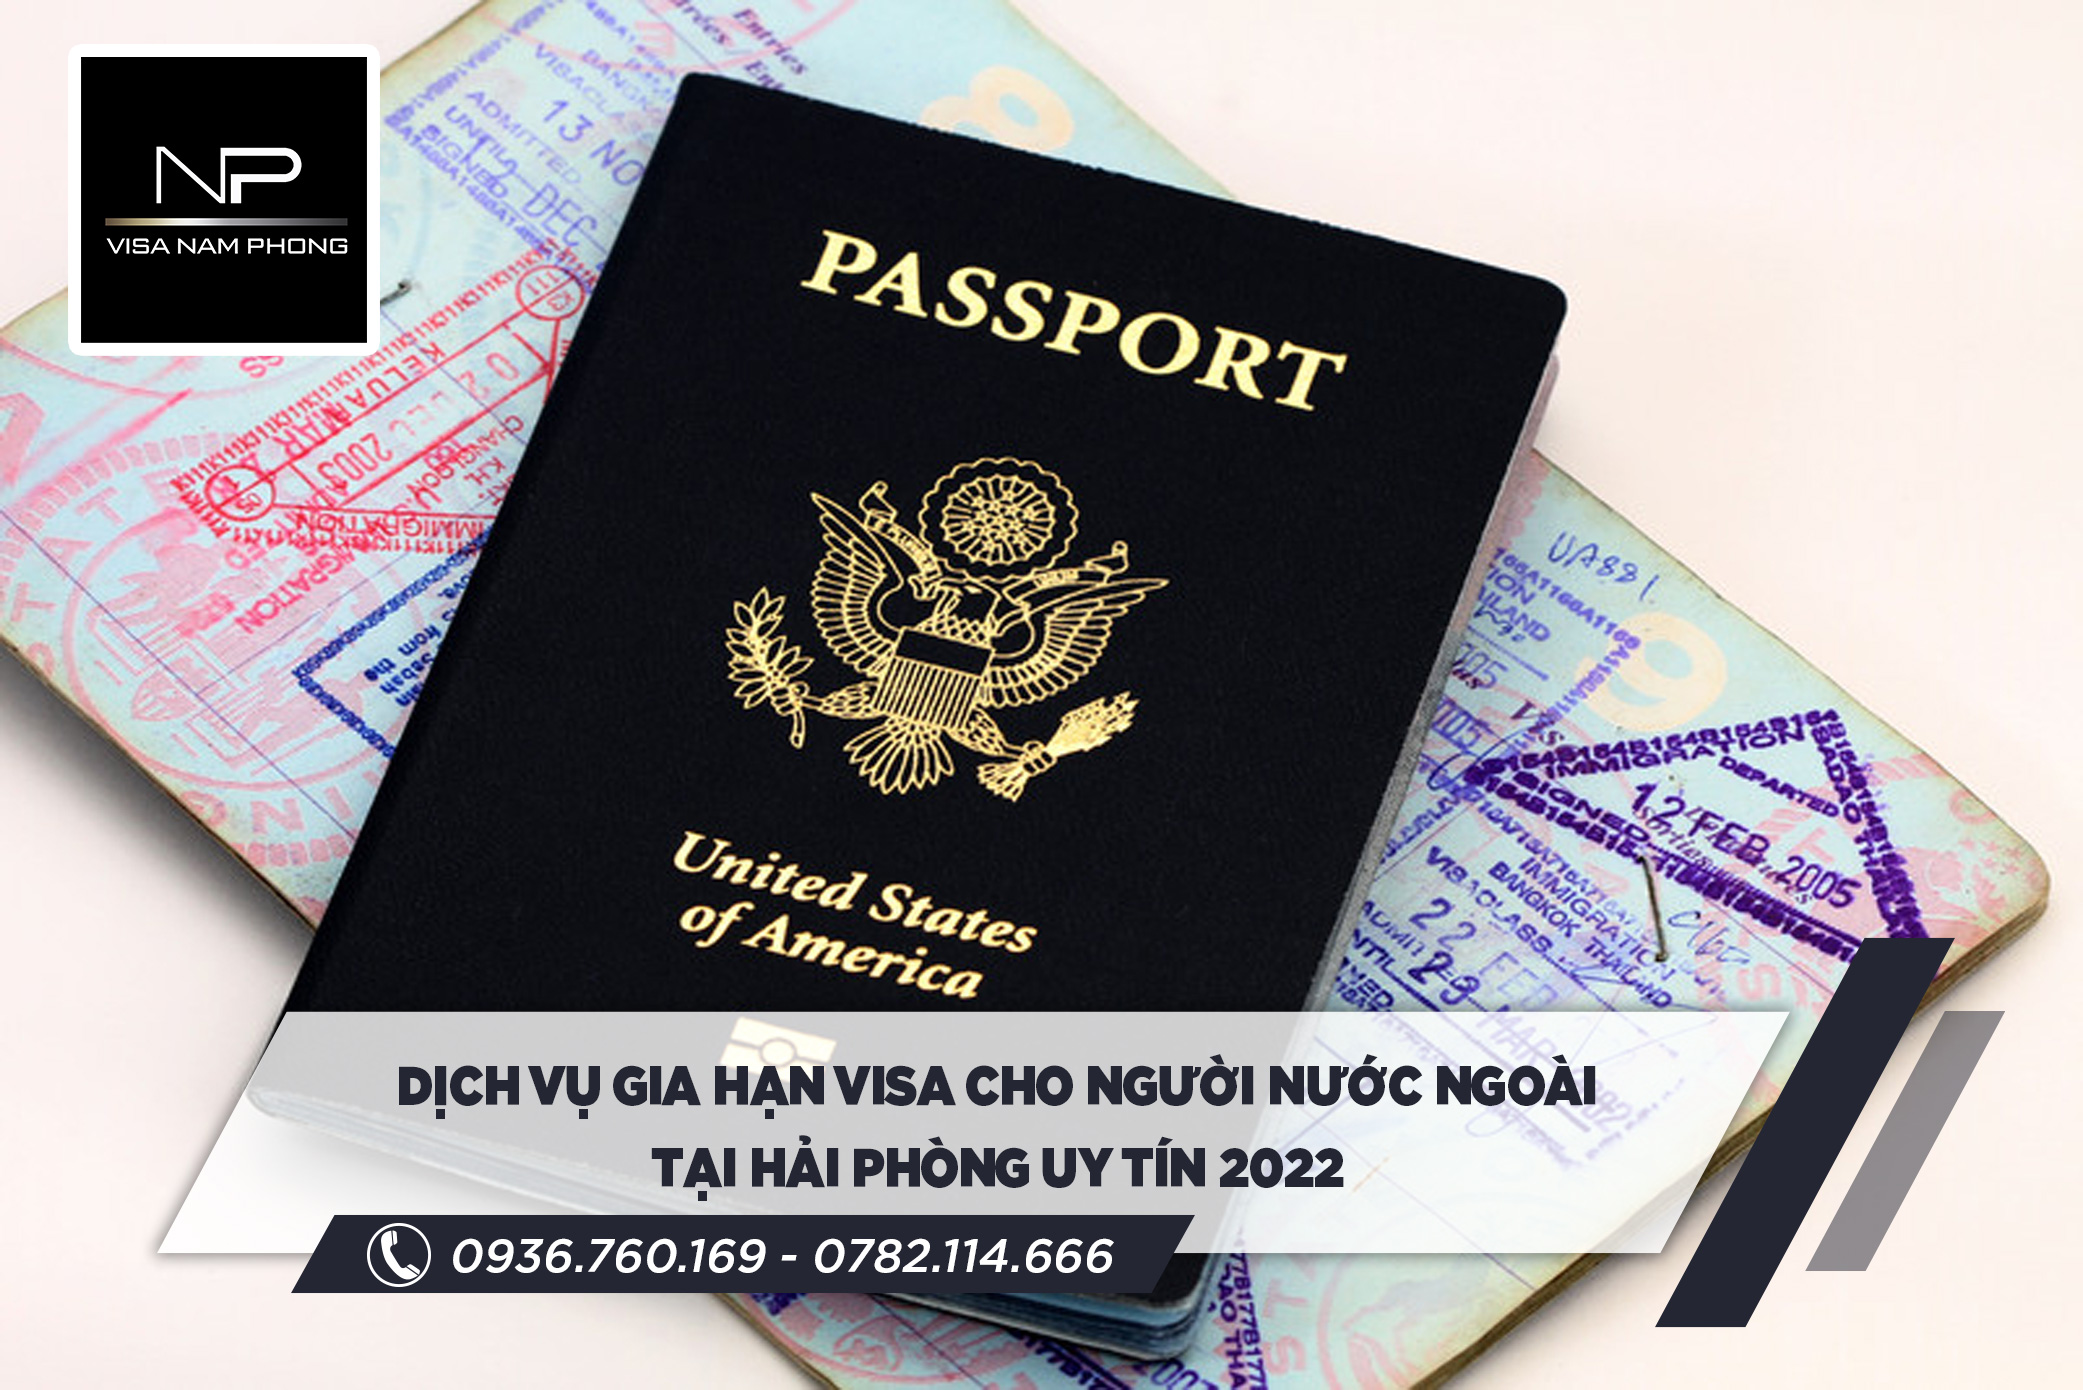 Dịch vụ gia hạn visa cho người nước ngoài tại Hải Phòng uy tín 2022